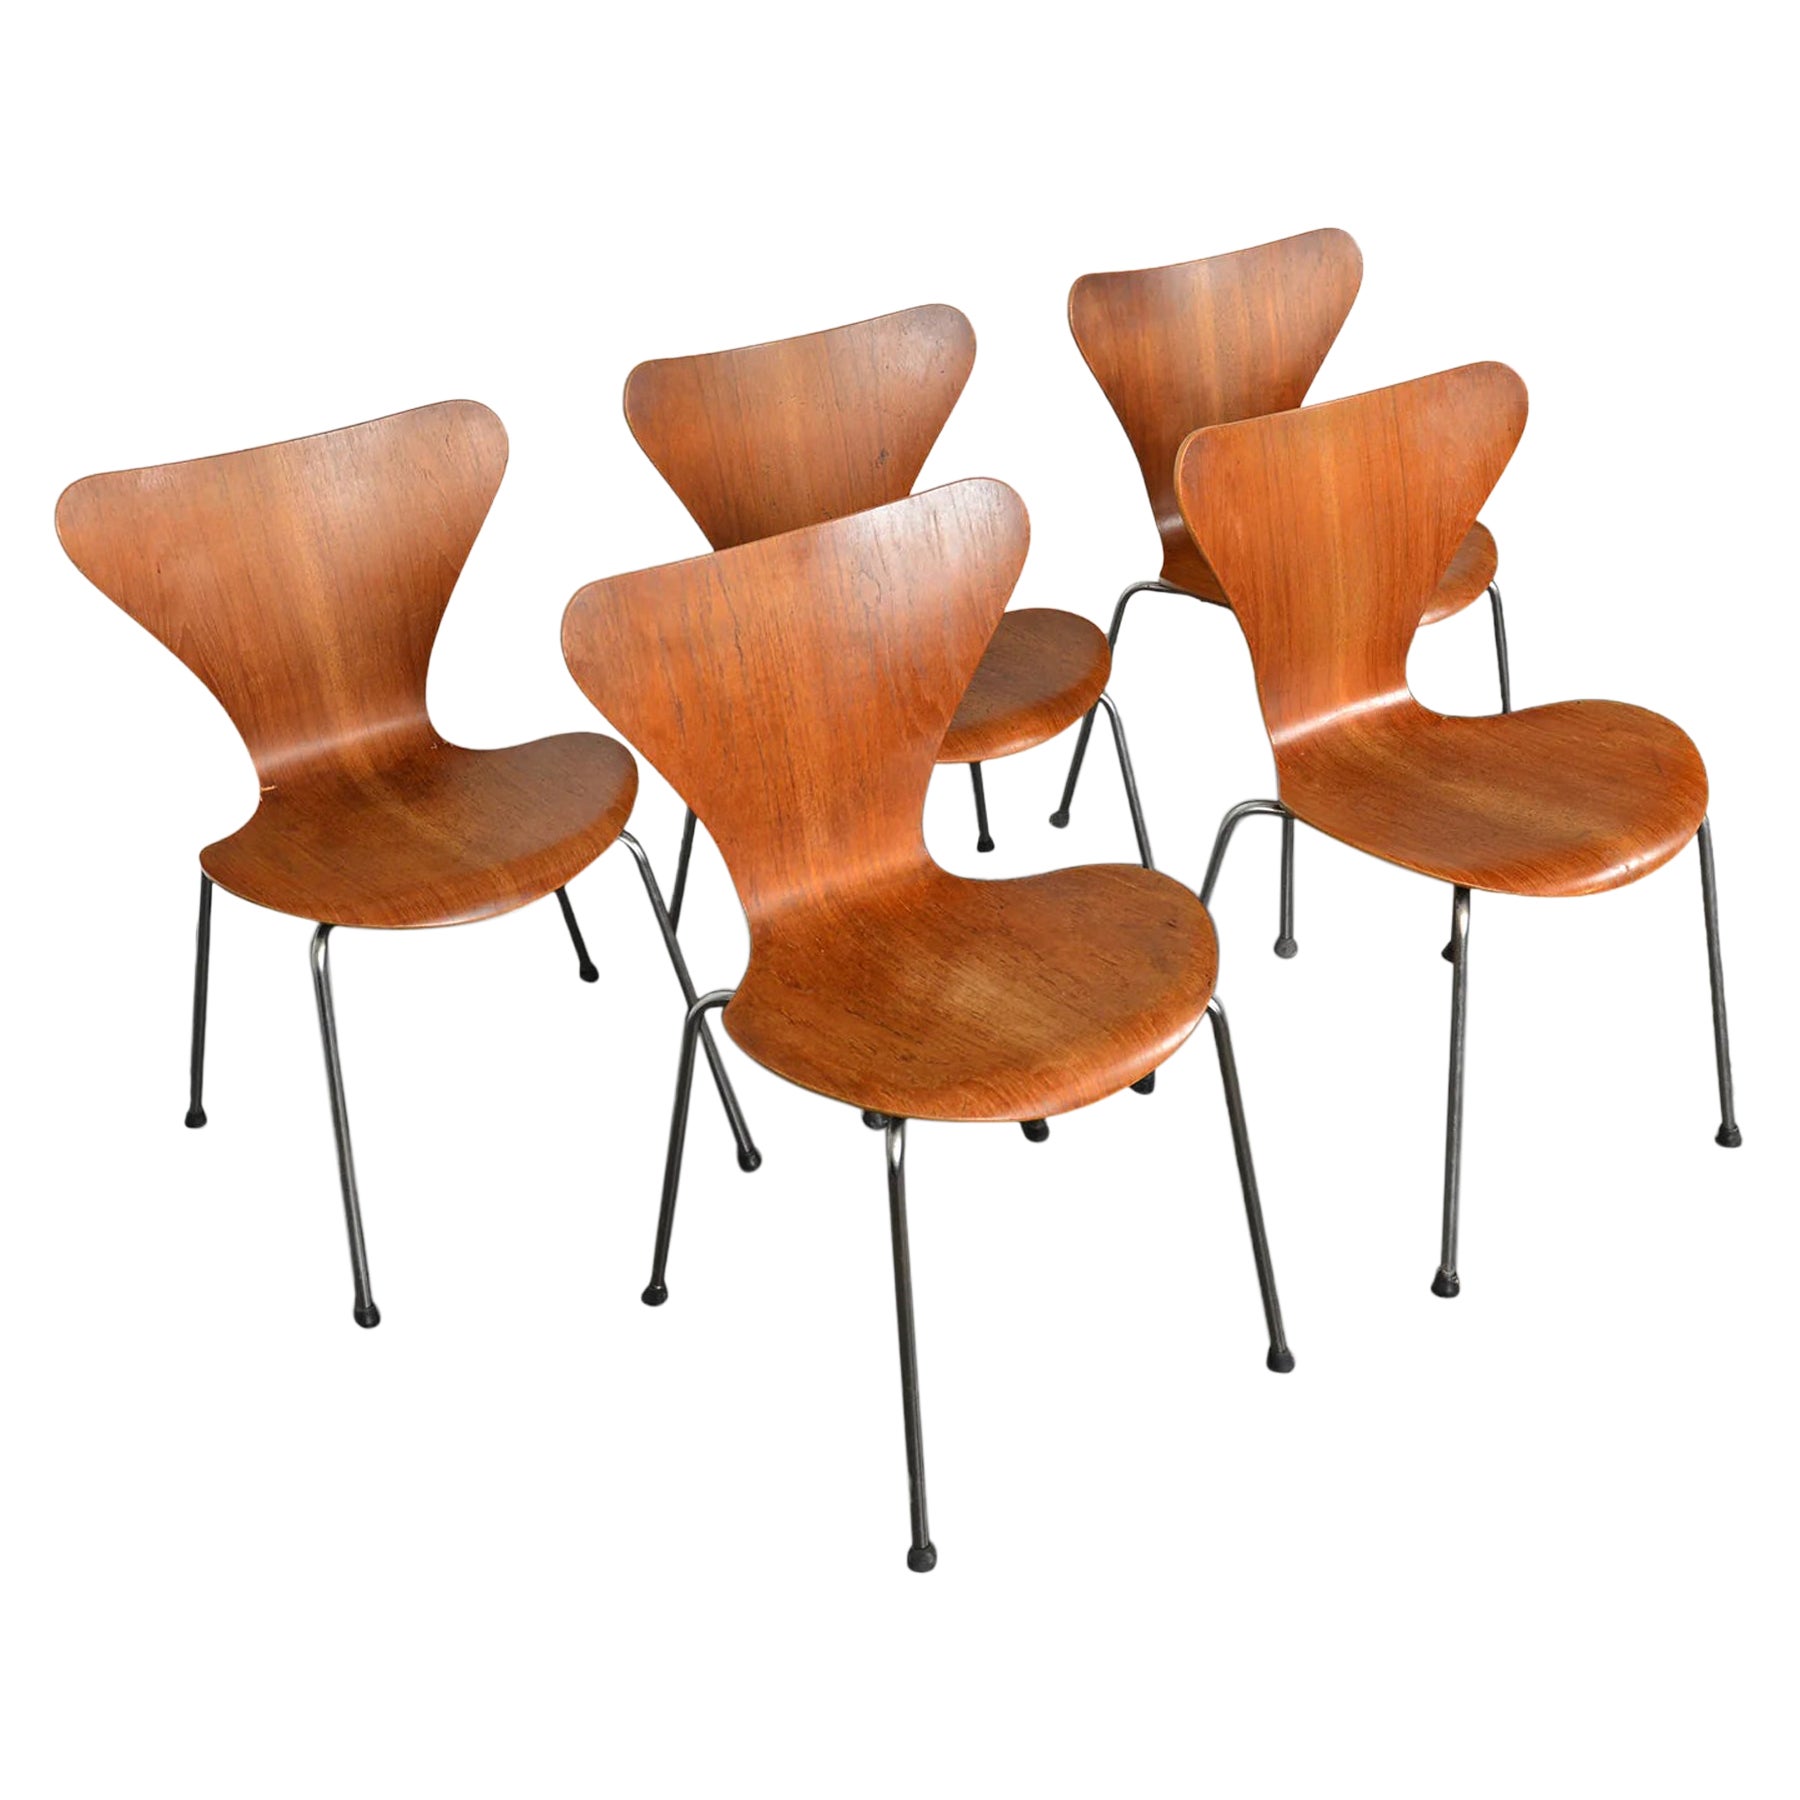 Satz von fünf stapelbaren Teakholz-Esszimmerstühlen, Modell 3107 Arne Jacobsen Serie 7, Serie